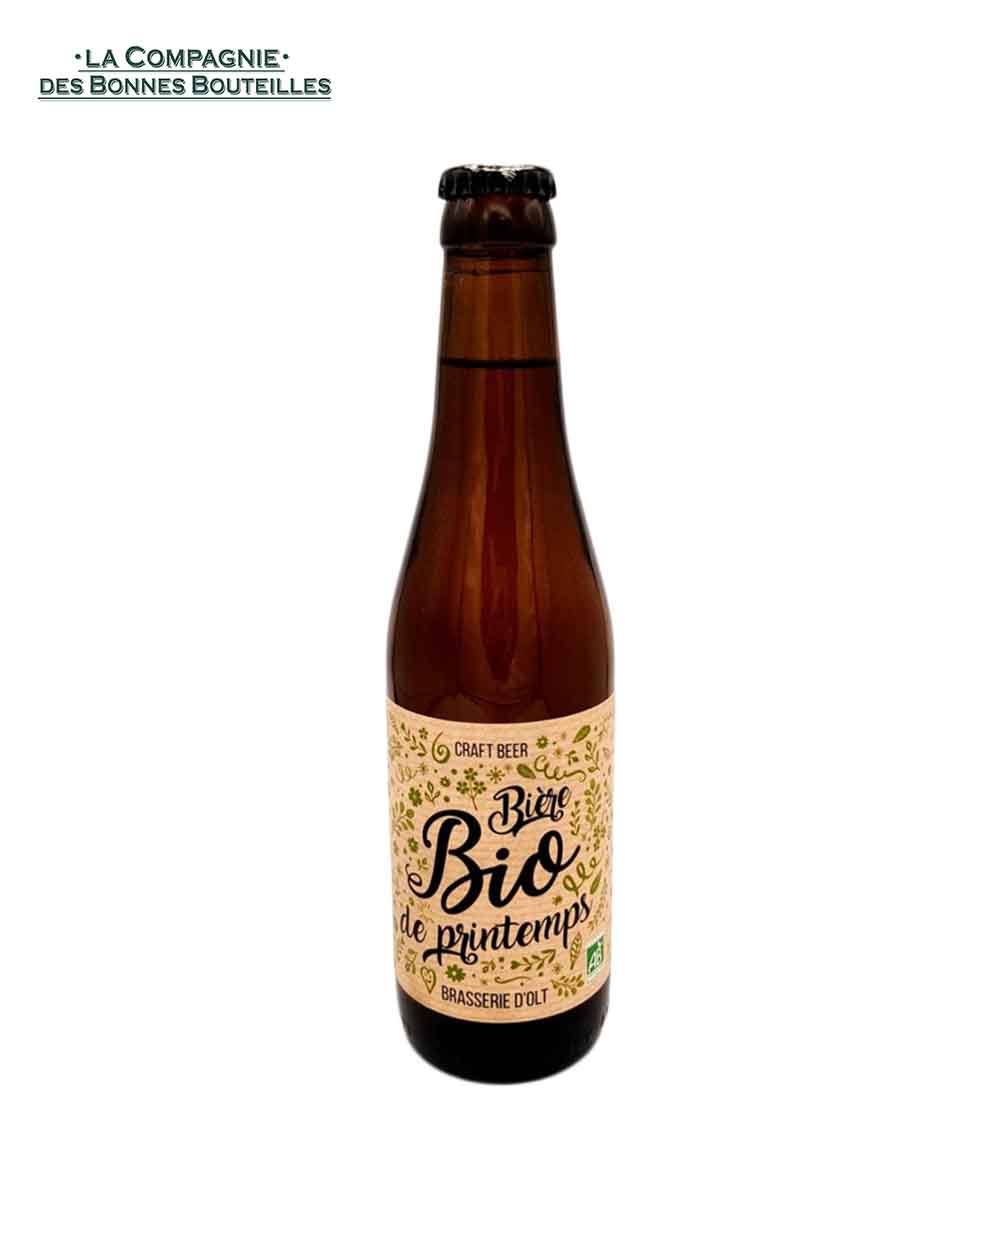 Bière Brasserie d'olt - Bio de Printemps - 33cl